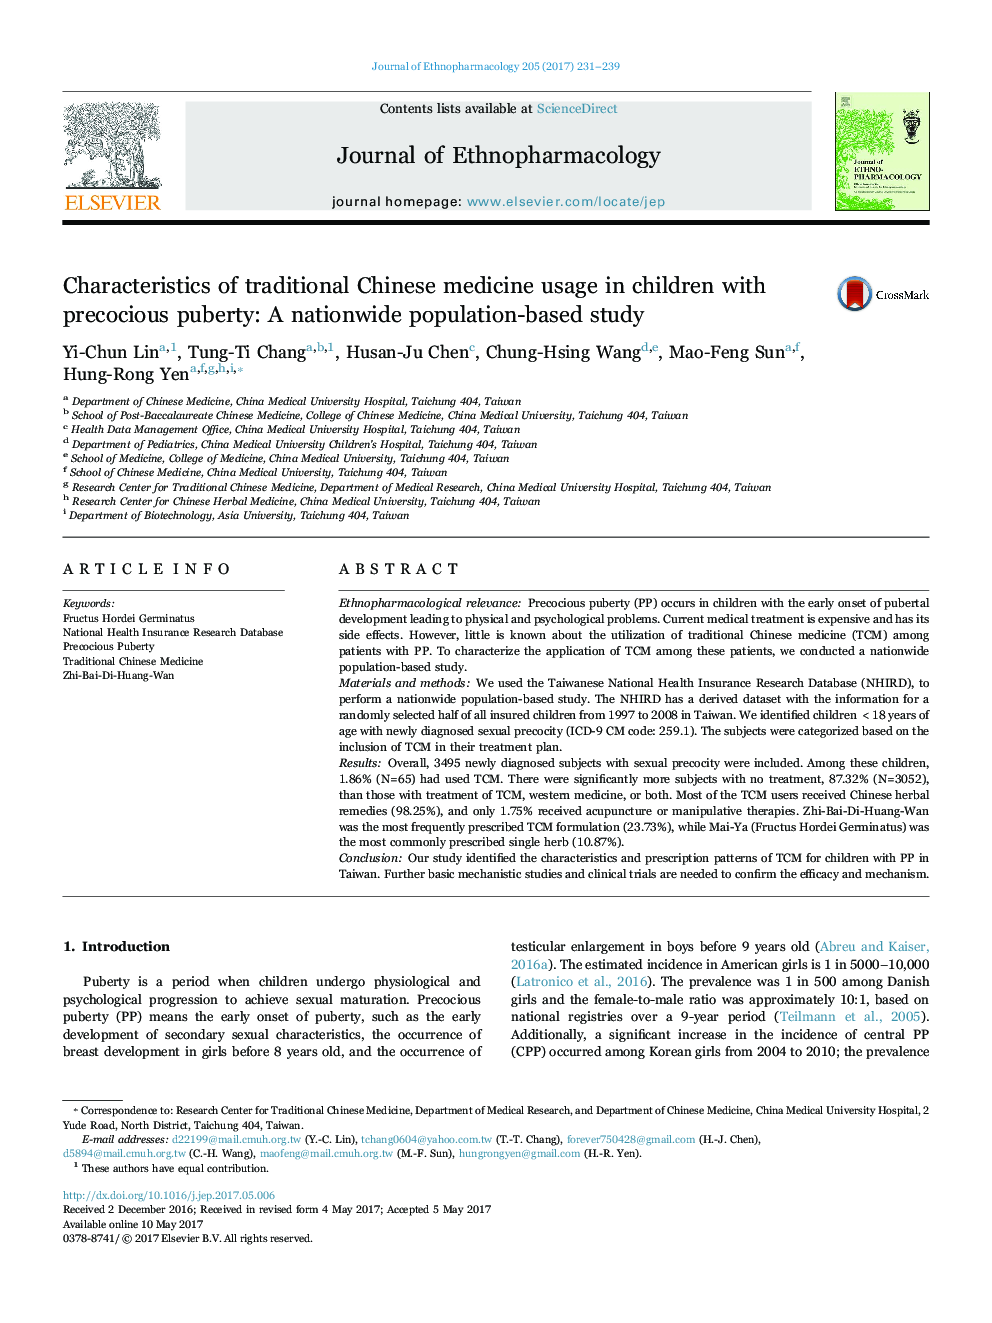 ویژگی های استفاده از طب سنتی چینی در کودکان مبتلا به بلوغ زودرس: مطالعه مبتنی بر جمعیت در سراسر کشور 